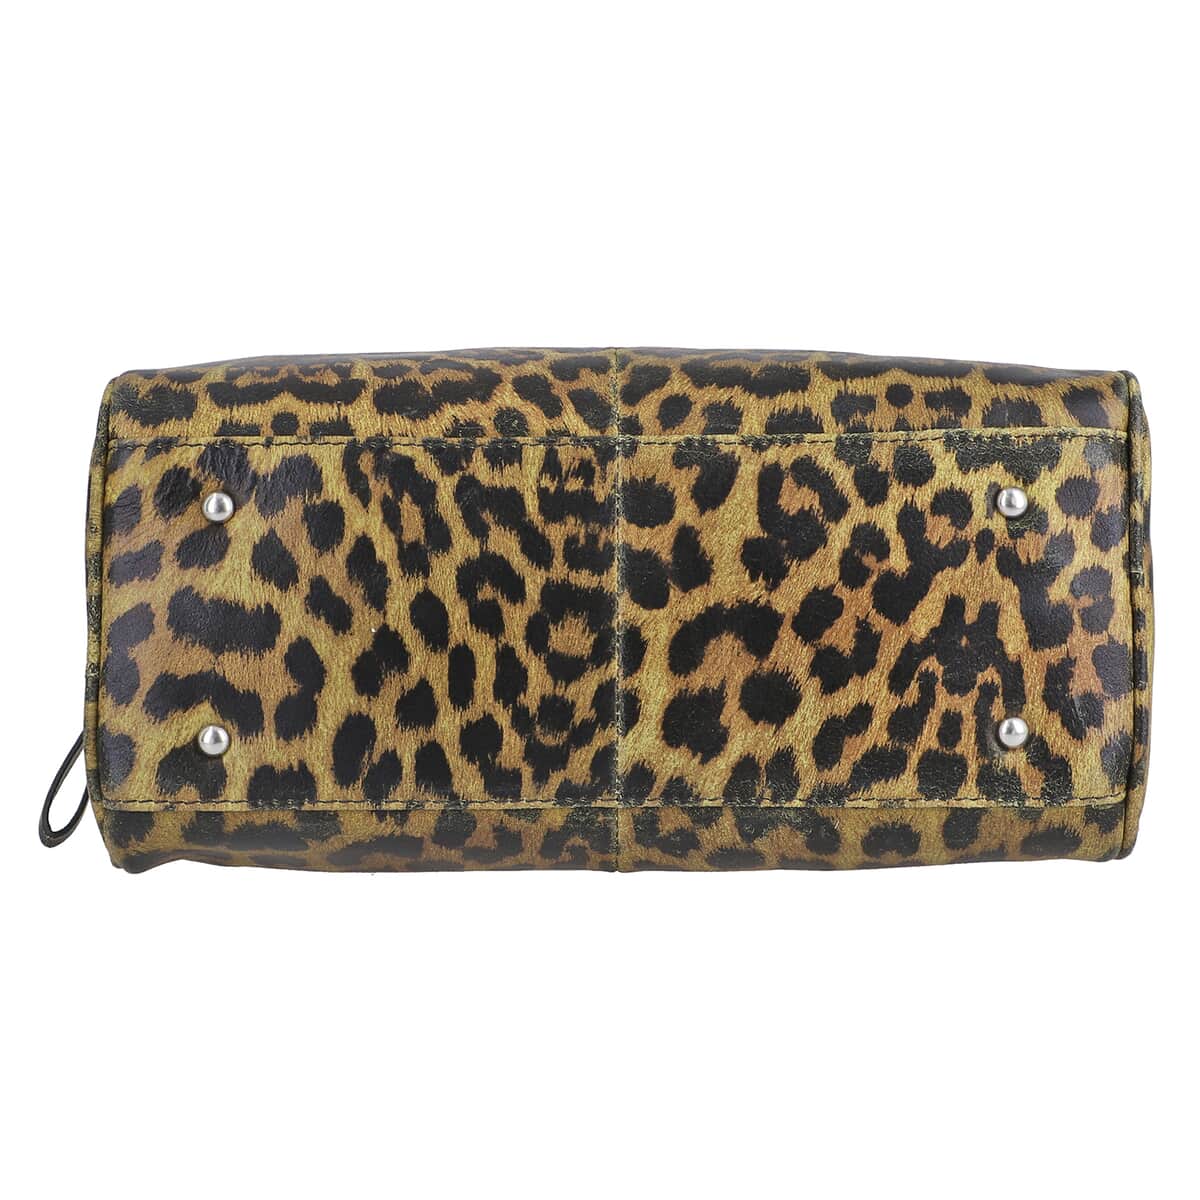 Tan and Black Leopard Foiled Pattern Genuine Leather Shoulder Bag with Adjustable Strap image number 5